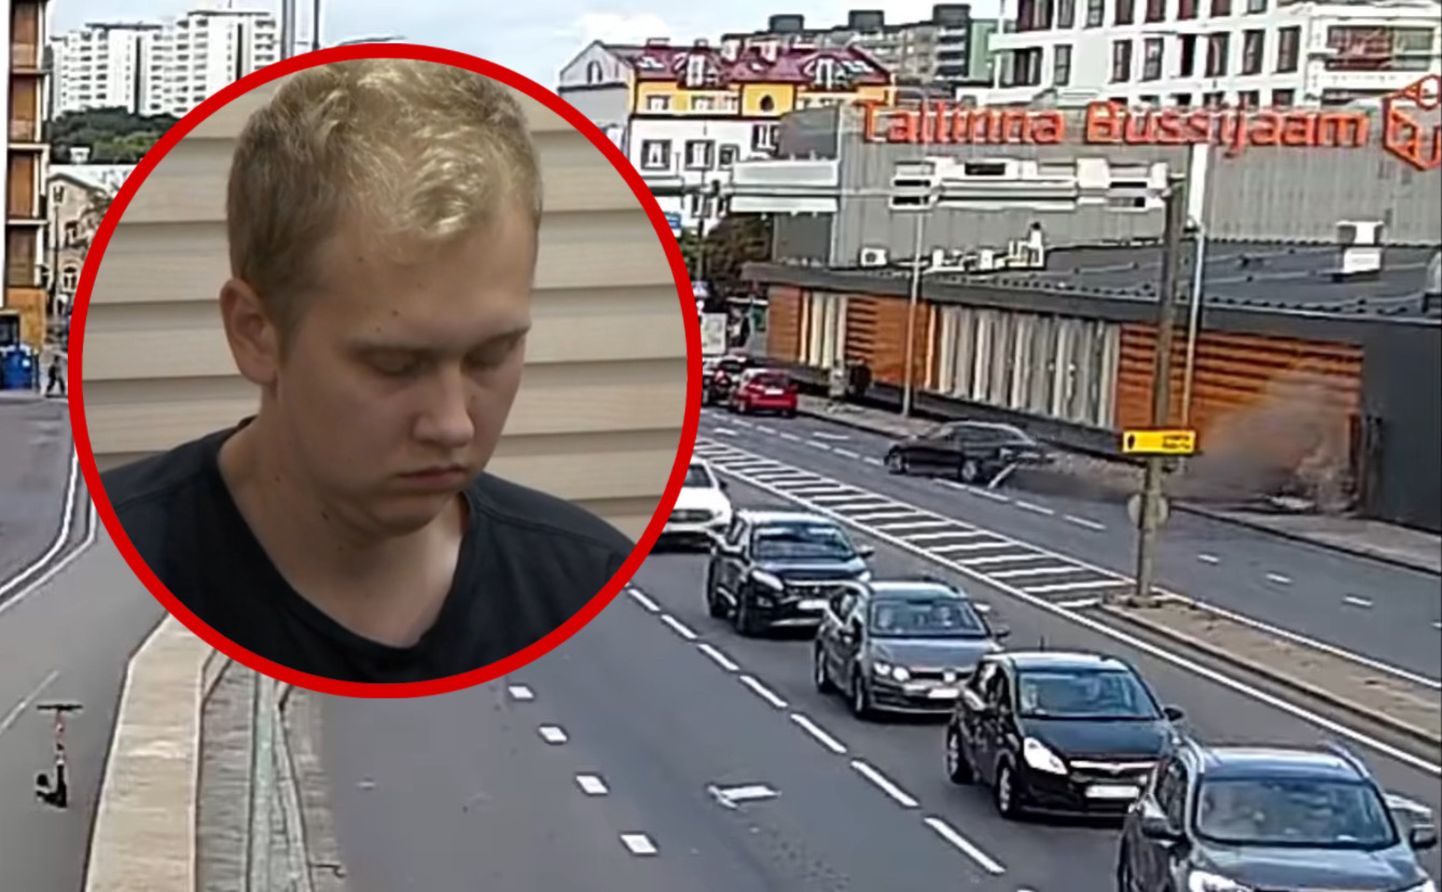 Tallinna bussijaama hoonesse ramminud 21-aastane noormees seisis Harju maakohtu ees.